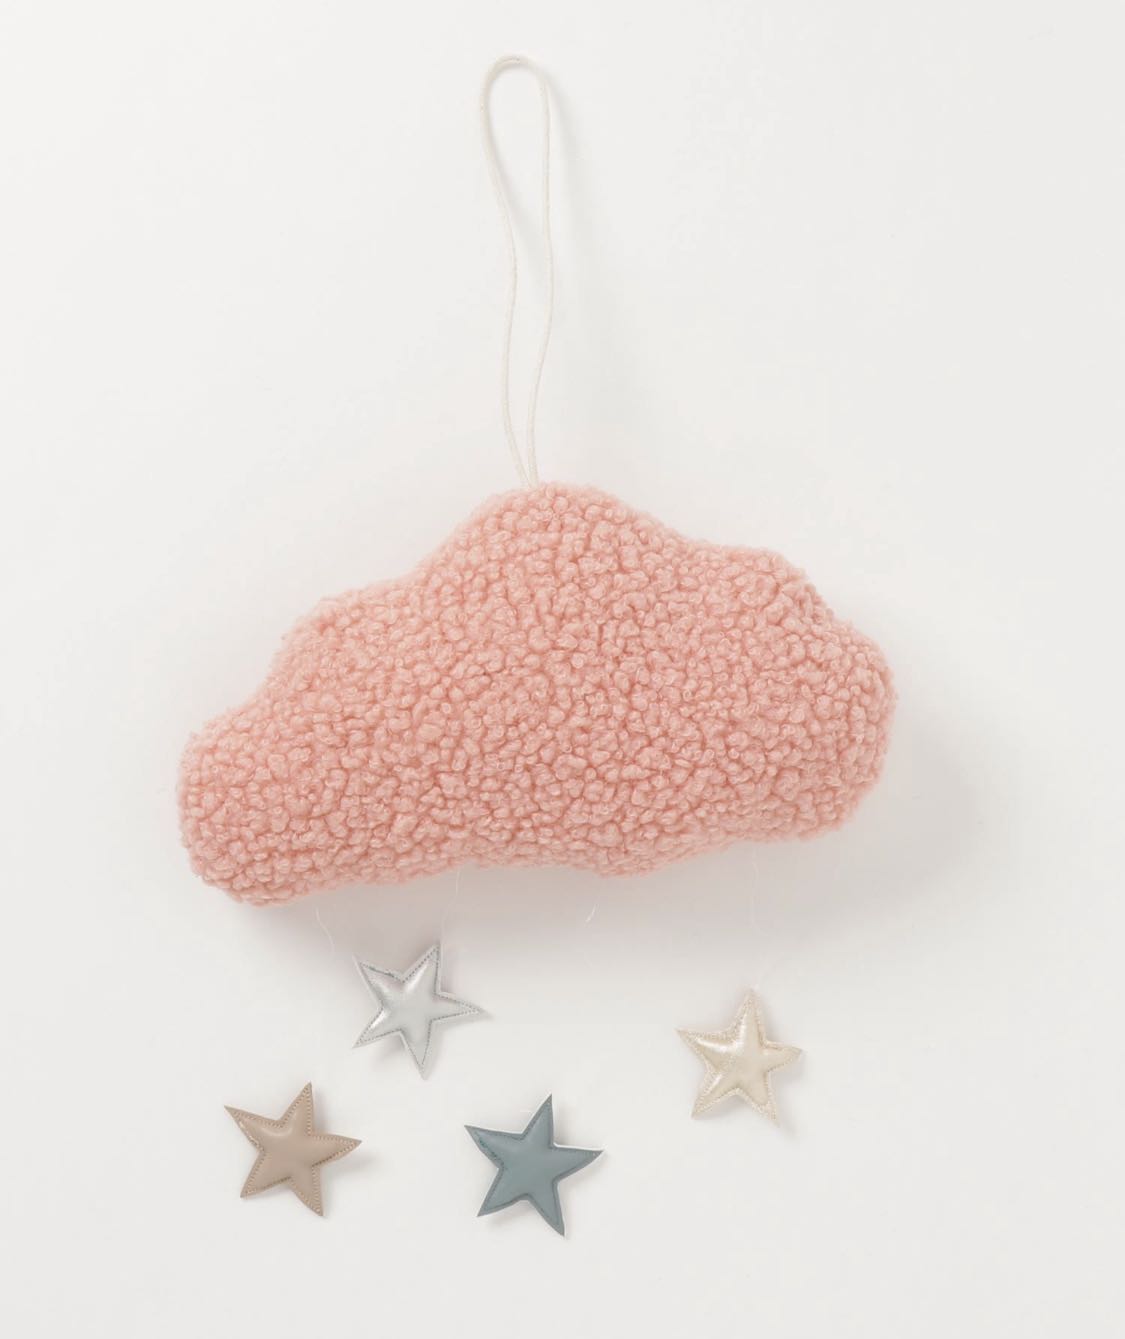 日本小众家居 儿童房装饰 壁挂 床挂 软绵绵粉色云朵 星星雨 挂件